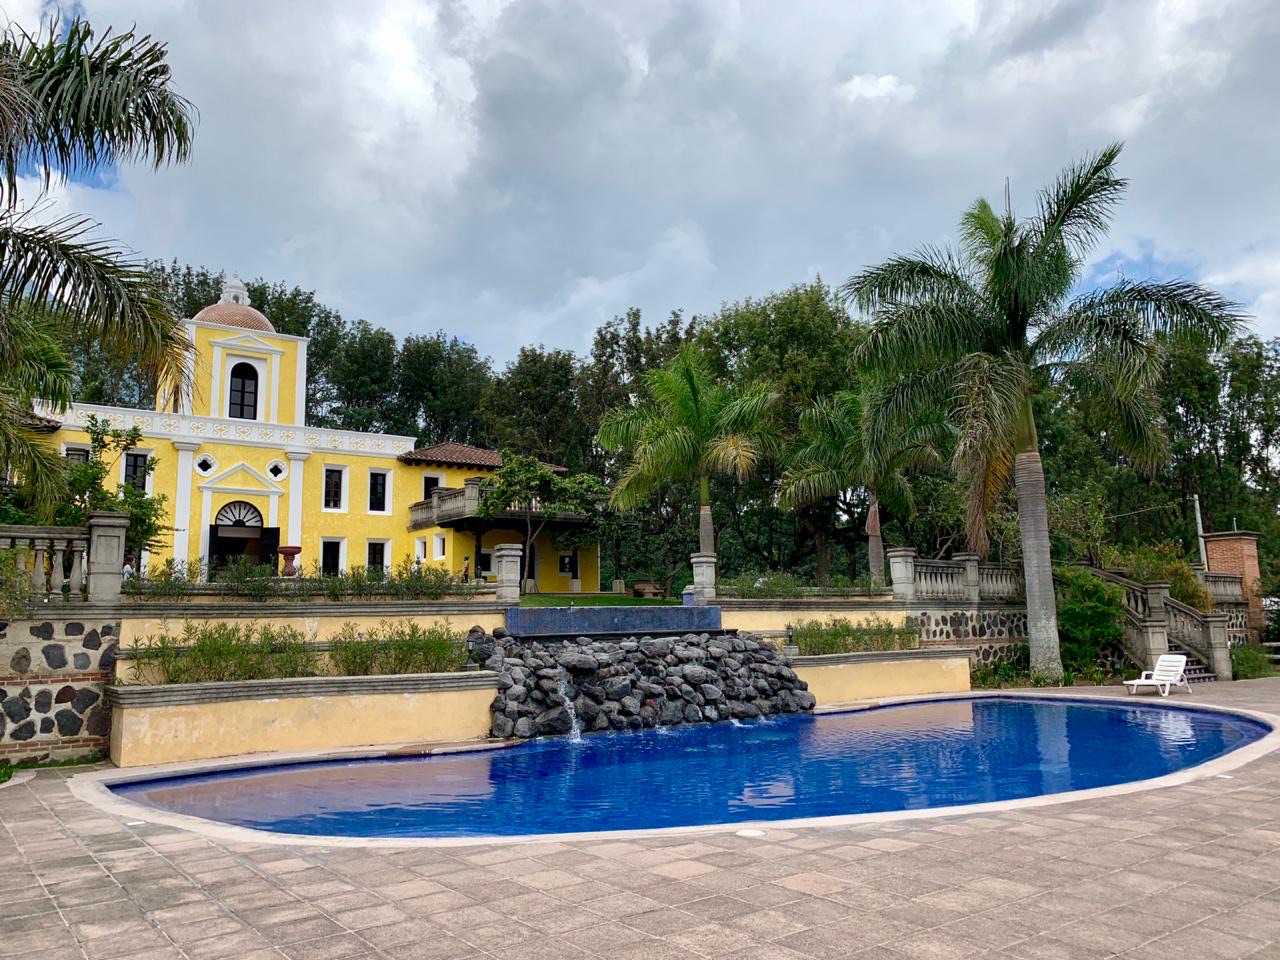 Condominio Antigua Gardens a 15 minutos de Antigua Guatemala